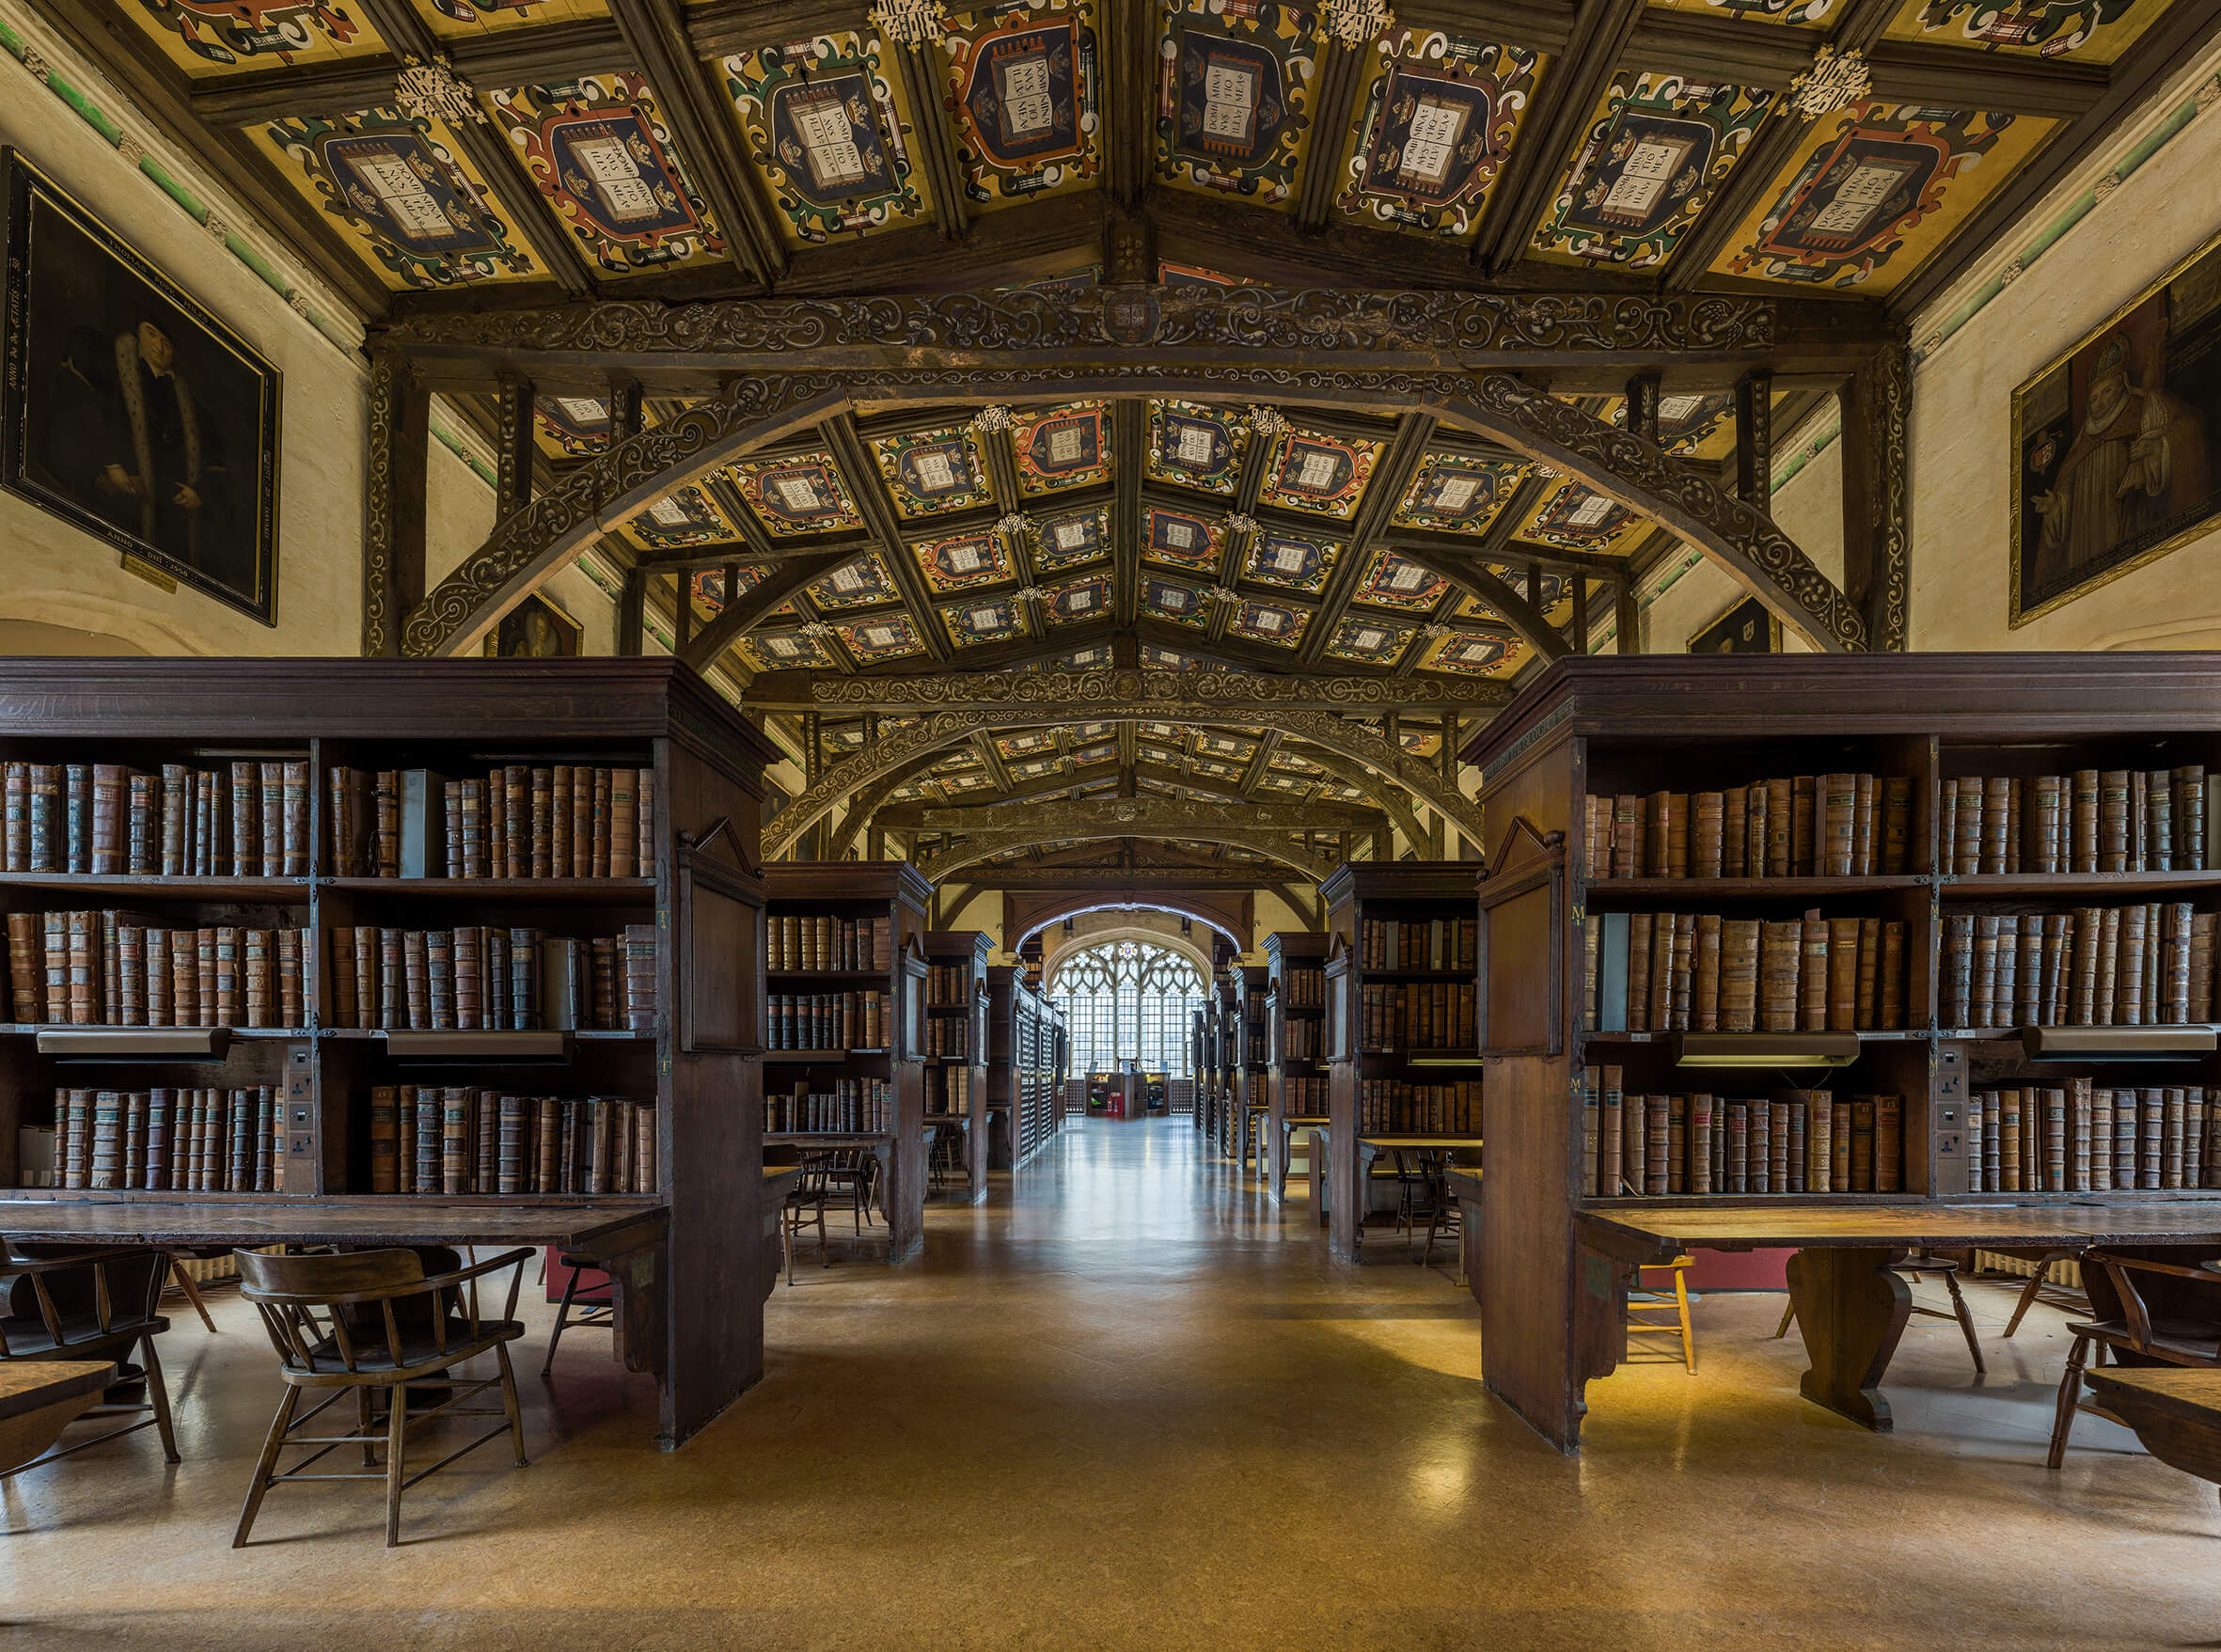 Библиотека в ней находится. Библиотека (Bodleian Library) Оксфорда. Библиотека Хогвартса Бодлианская библиотека Оксфорд. Оксфорд университет Бодлианская библиотека. Бодлеянская библиотека в Оксфорде.